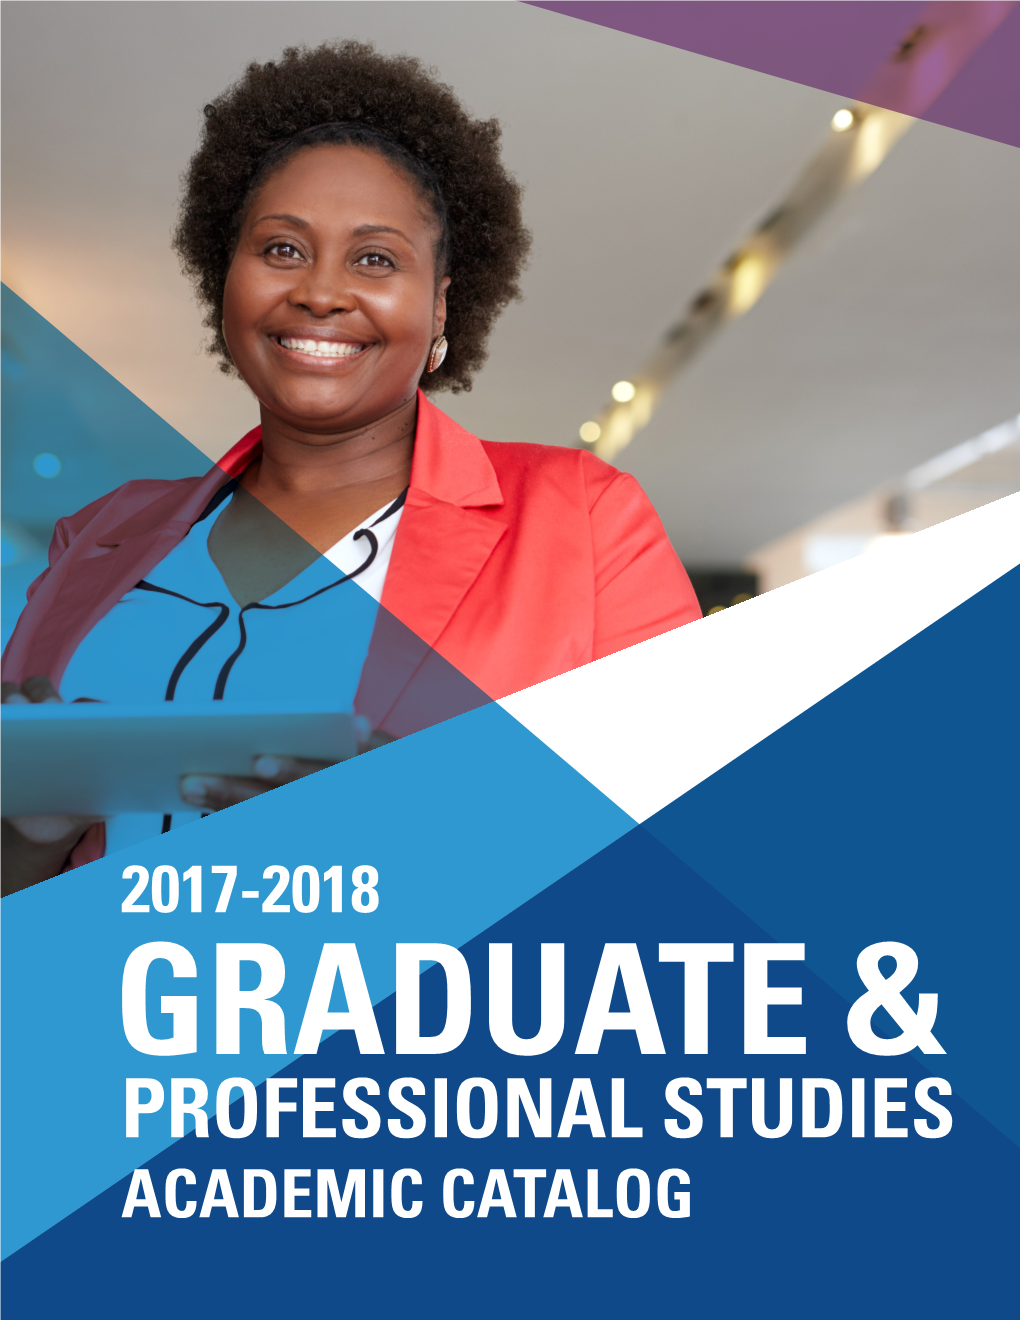 2017-2018: Graduate Academic Catalog